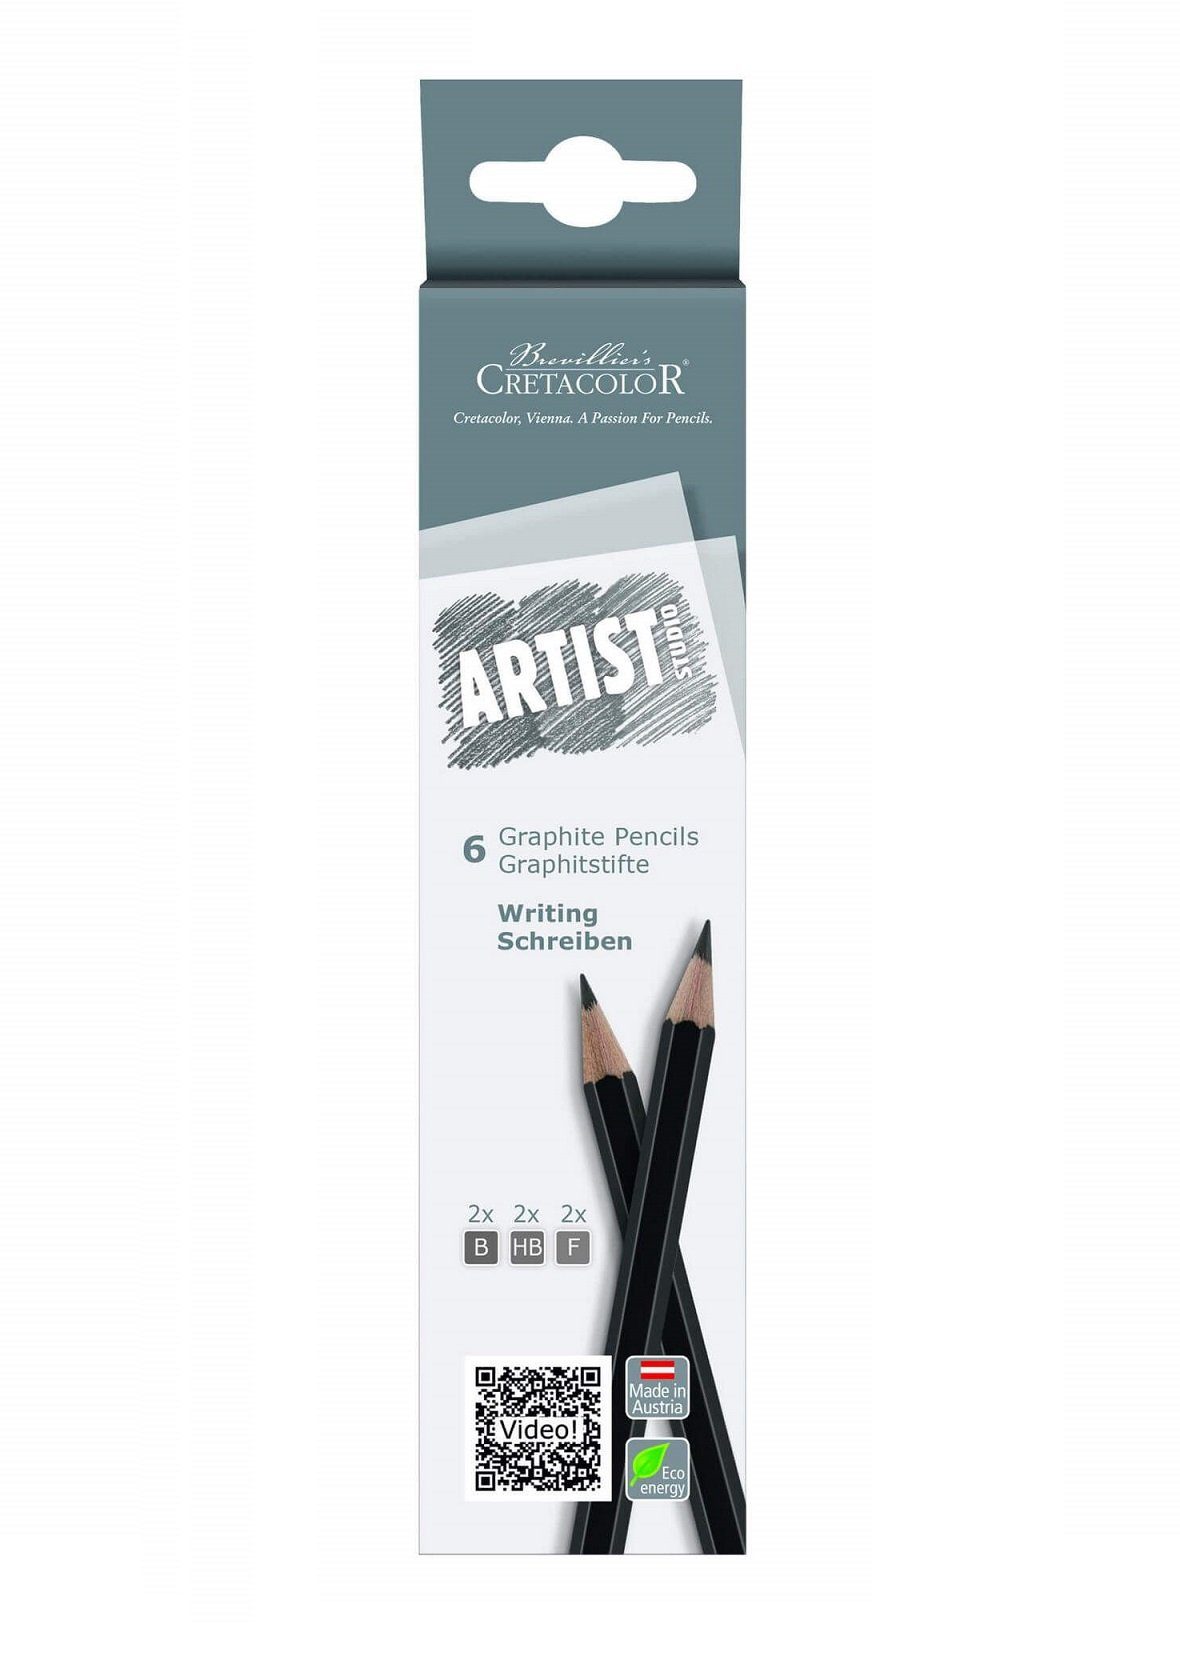 Brevilliers Cretacolor Bleistift Graphitstifte zum Schreiben, Perfekt zum Skizzieren und Zeichnen - Made in Austria